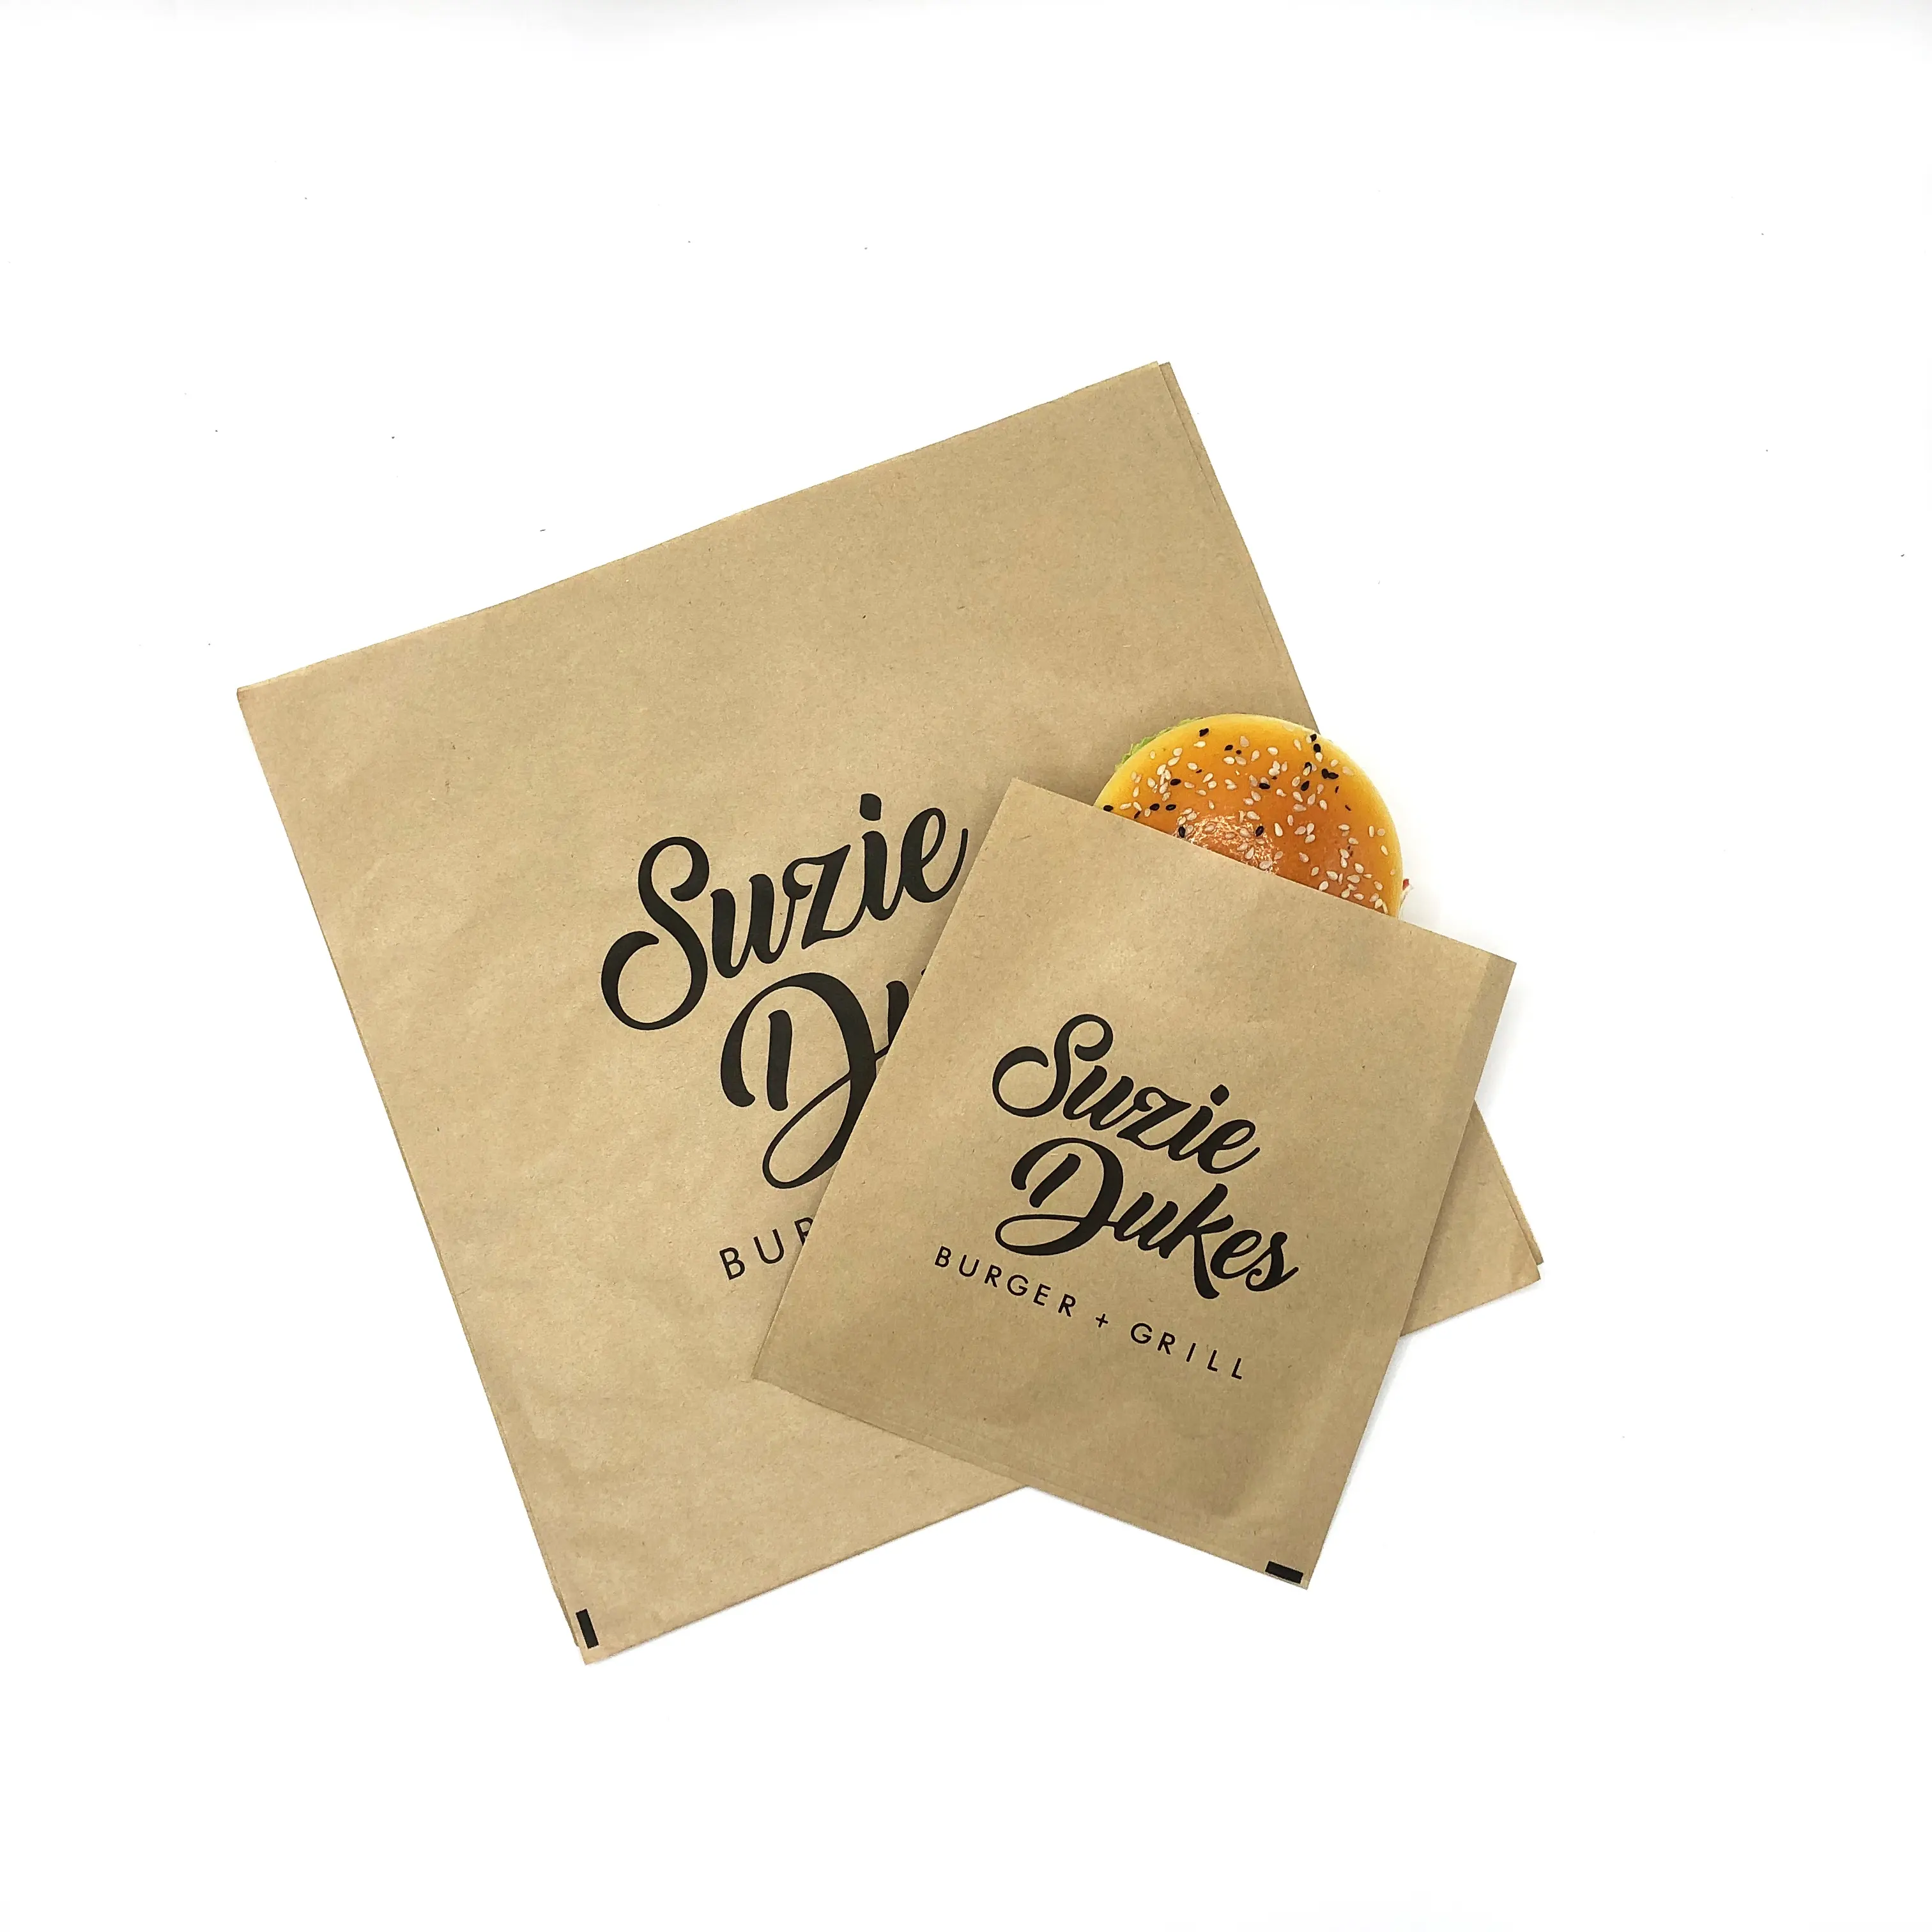 Bolsas de papel Kraft para alimentos, fabricación de cera de pergamino a prueba de grasa, bolsa de embalaje personalizada para sándwich, galletas, pastelería, aperitivos con logotipo